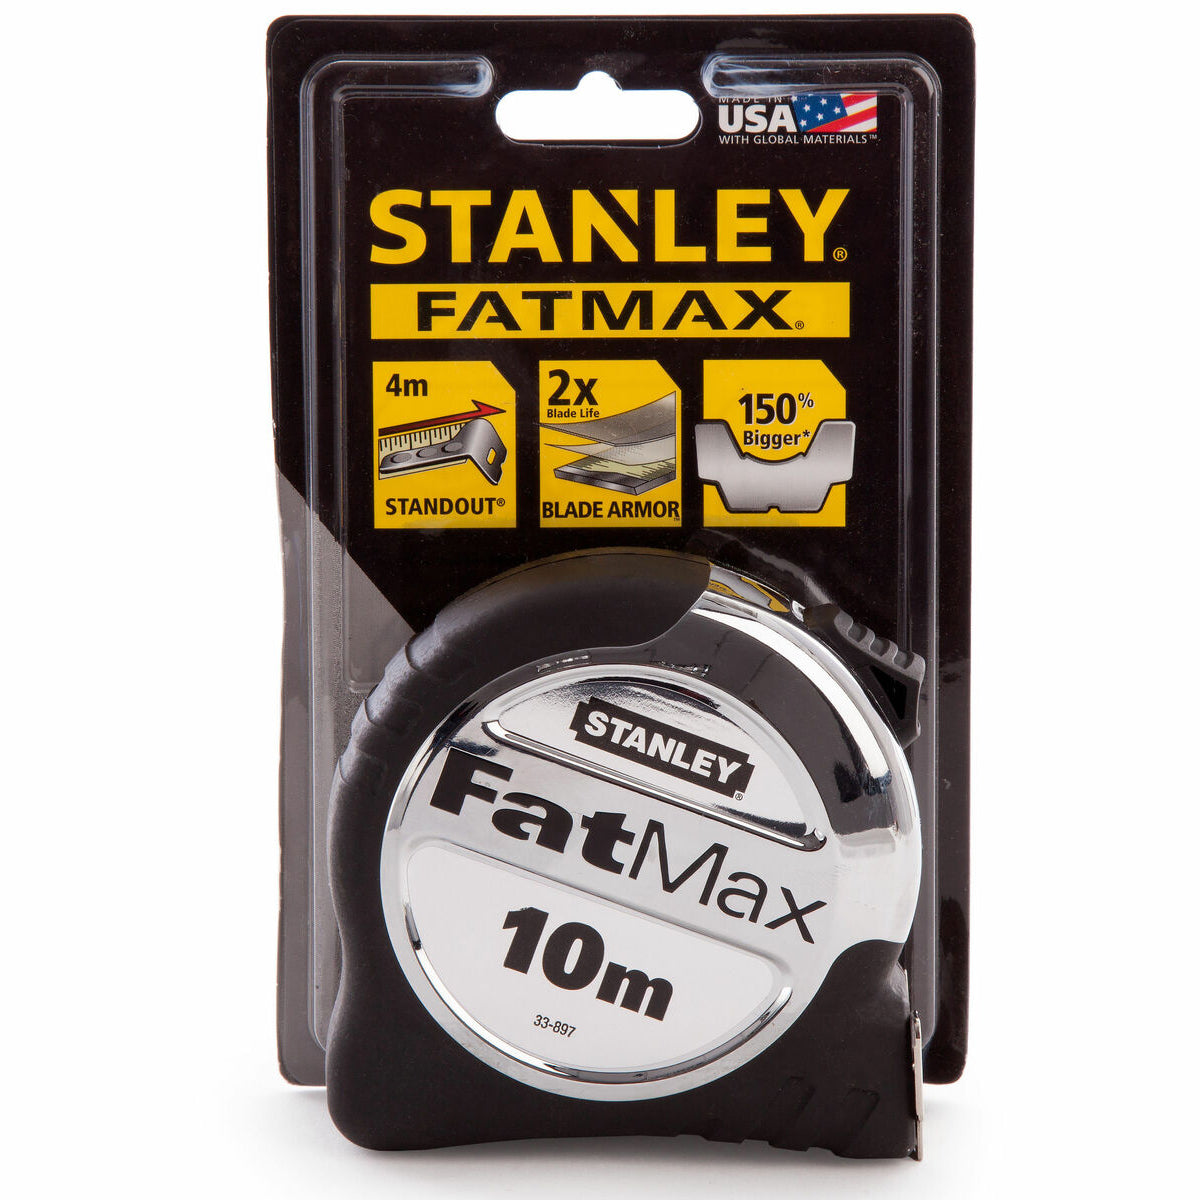 Stanley 0-33-897 FatMax XL Pro Pocket Tape Rule 10m Metric STA033897